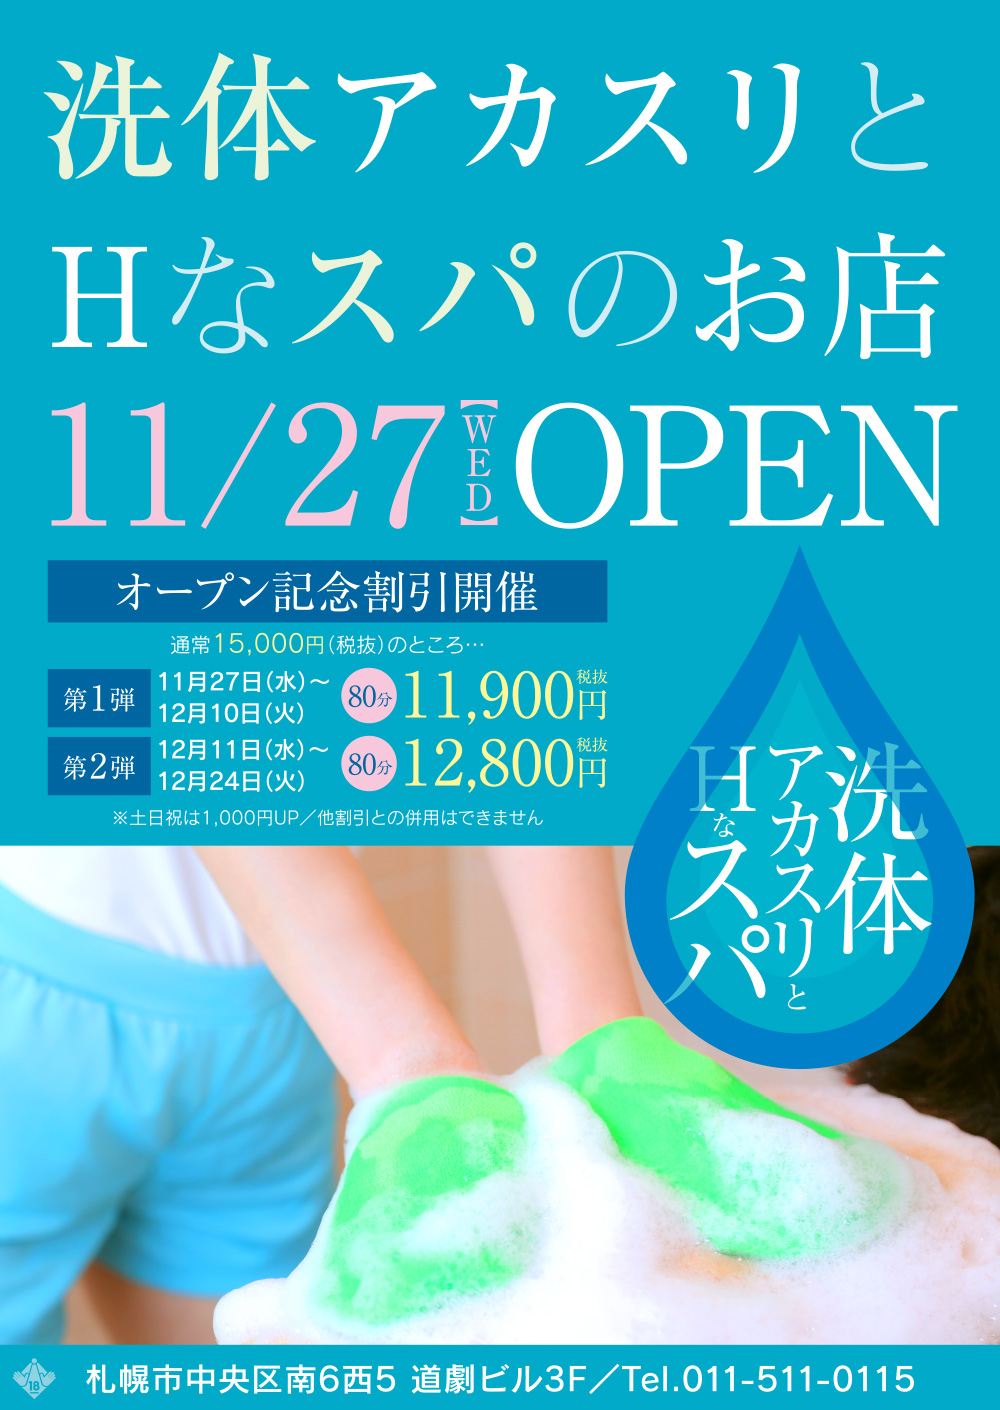 11/27 NEW OPEN!!